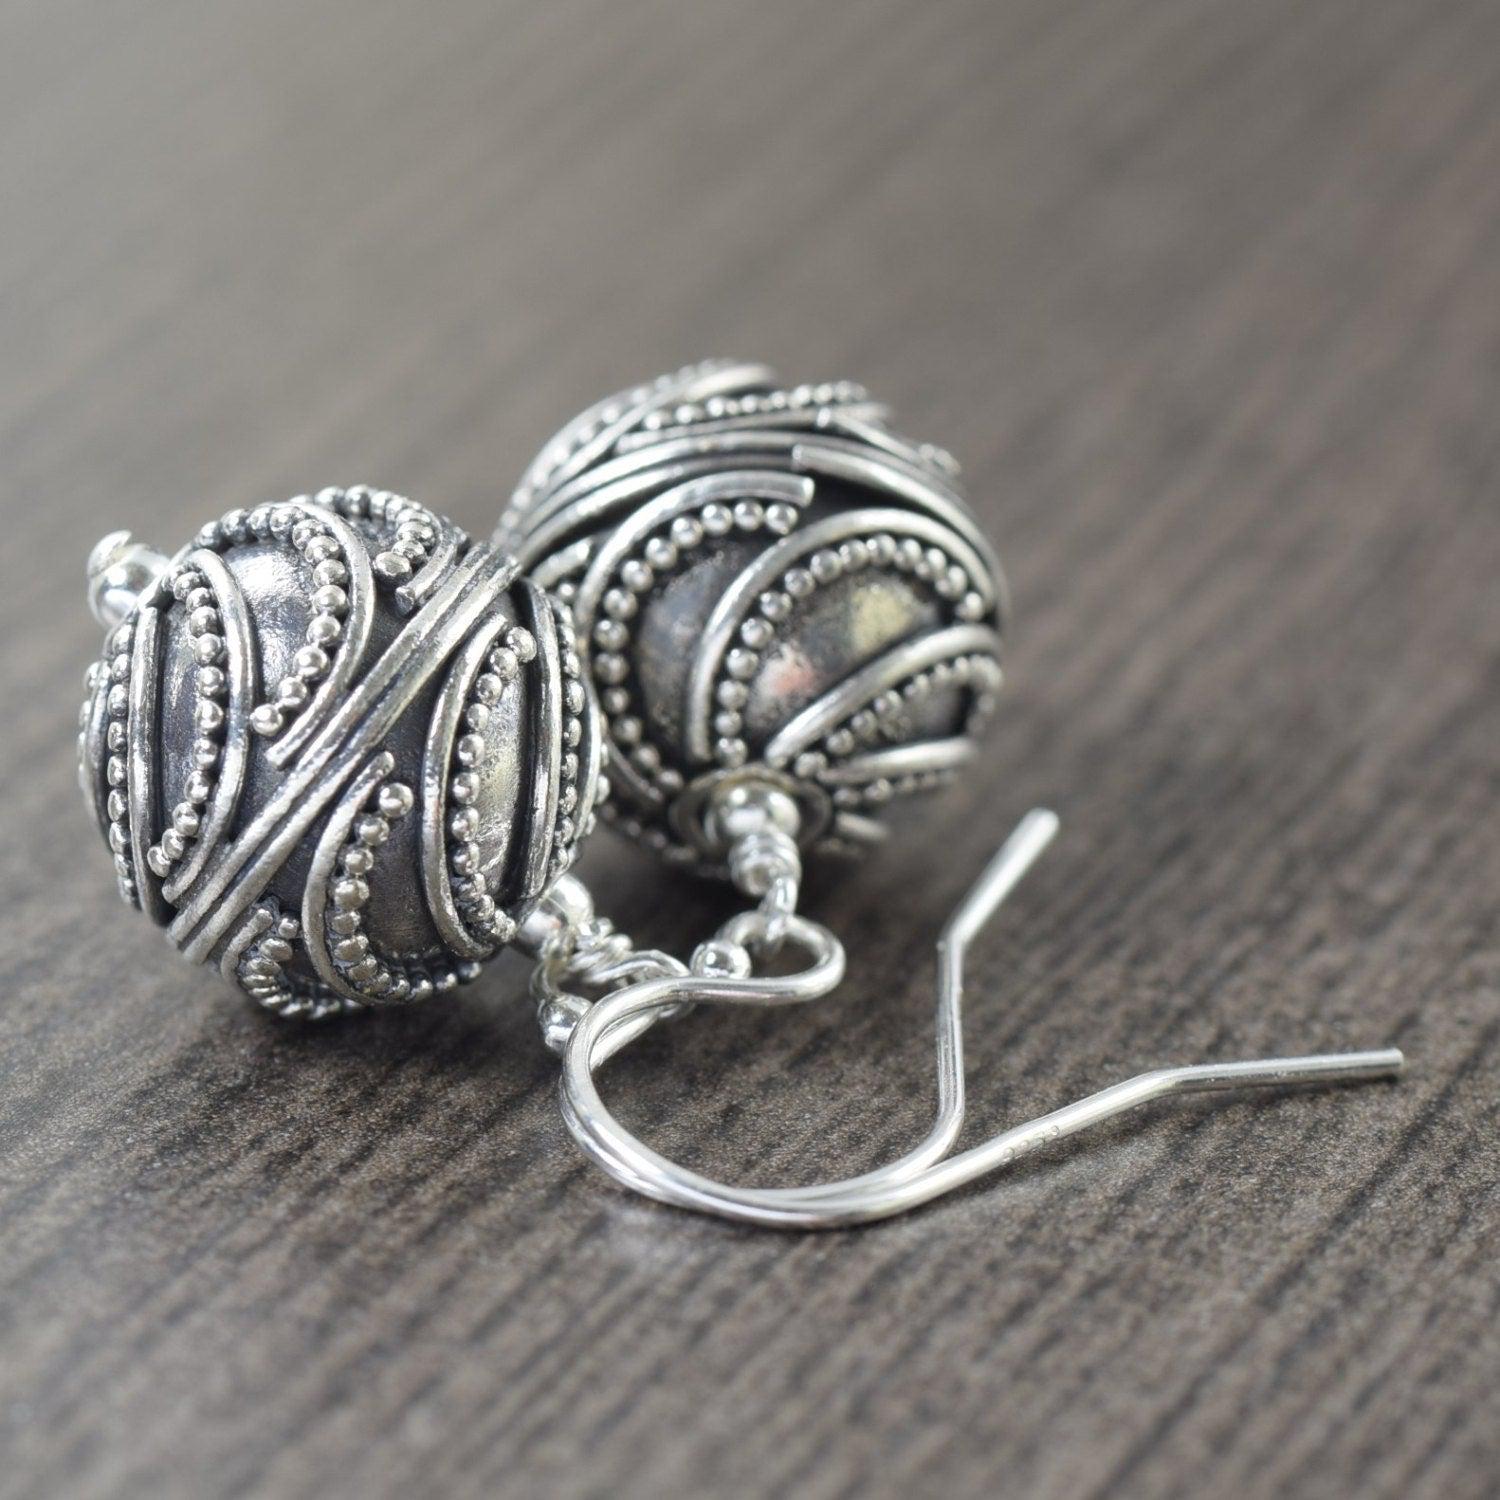 Crescent Moon earrings Sterling silver Bali earrings